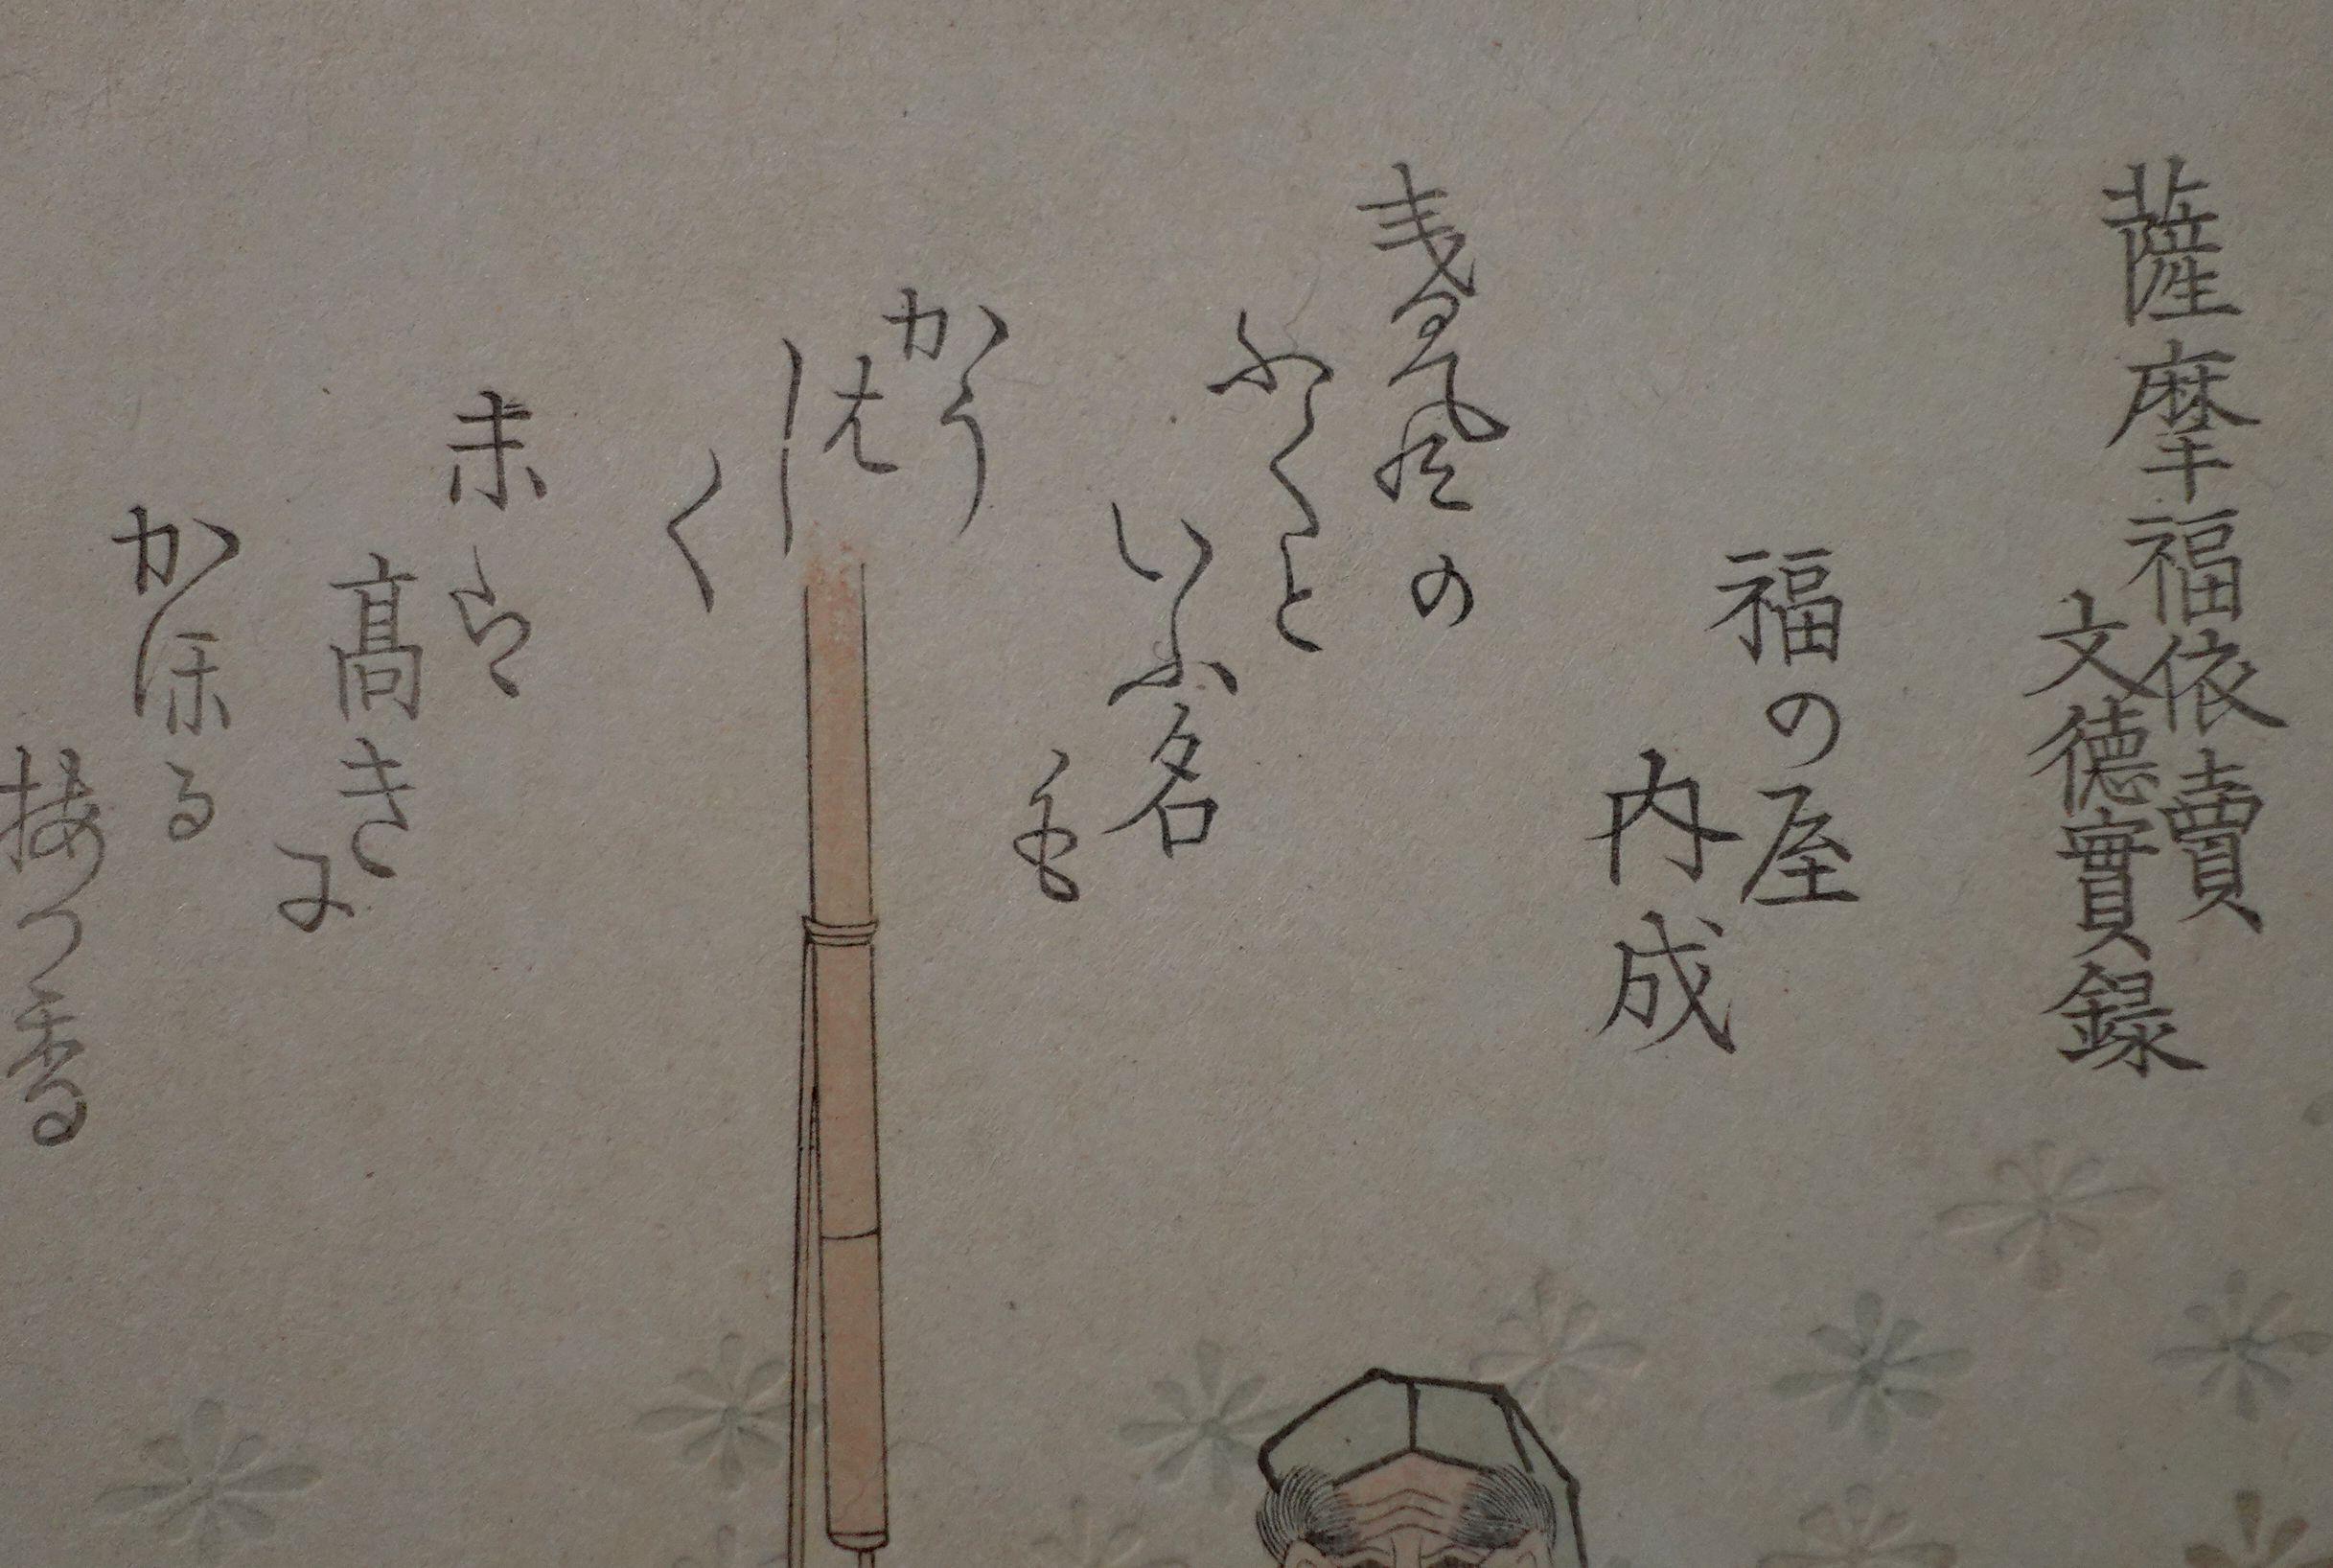 19th Century Japanese Woodblock Gakutei by Harunobu Sugawara-2 For Sale